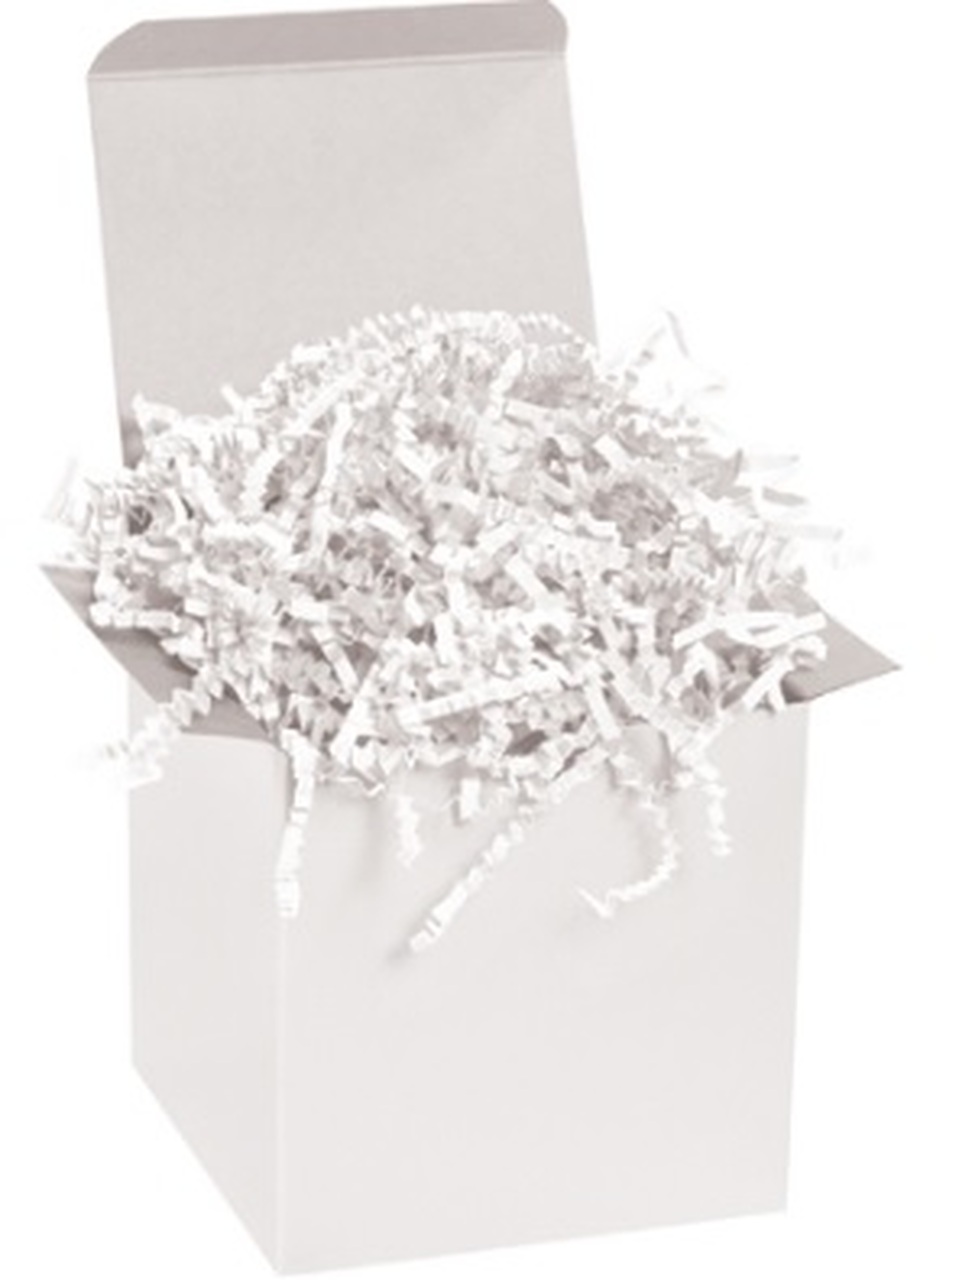 40 lb. White Crinkle Paper